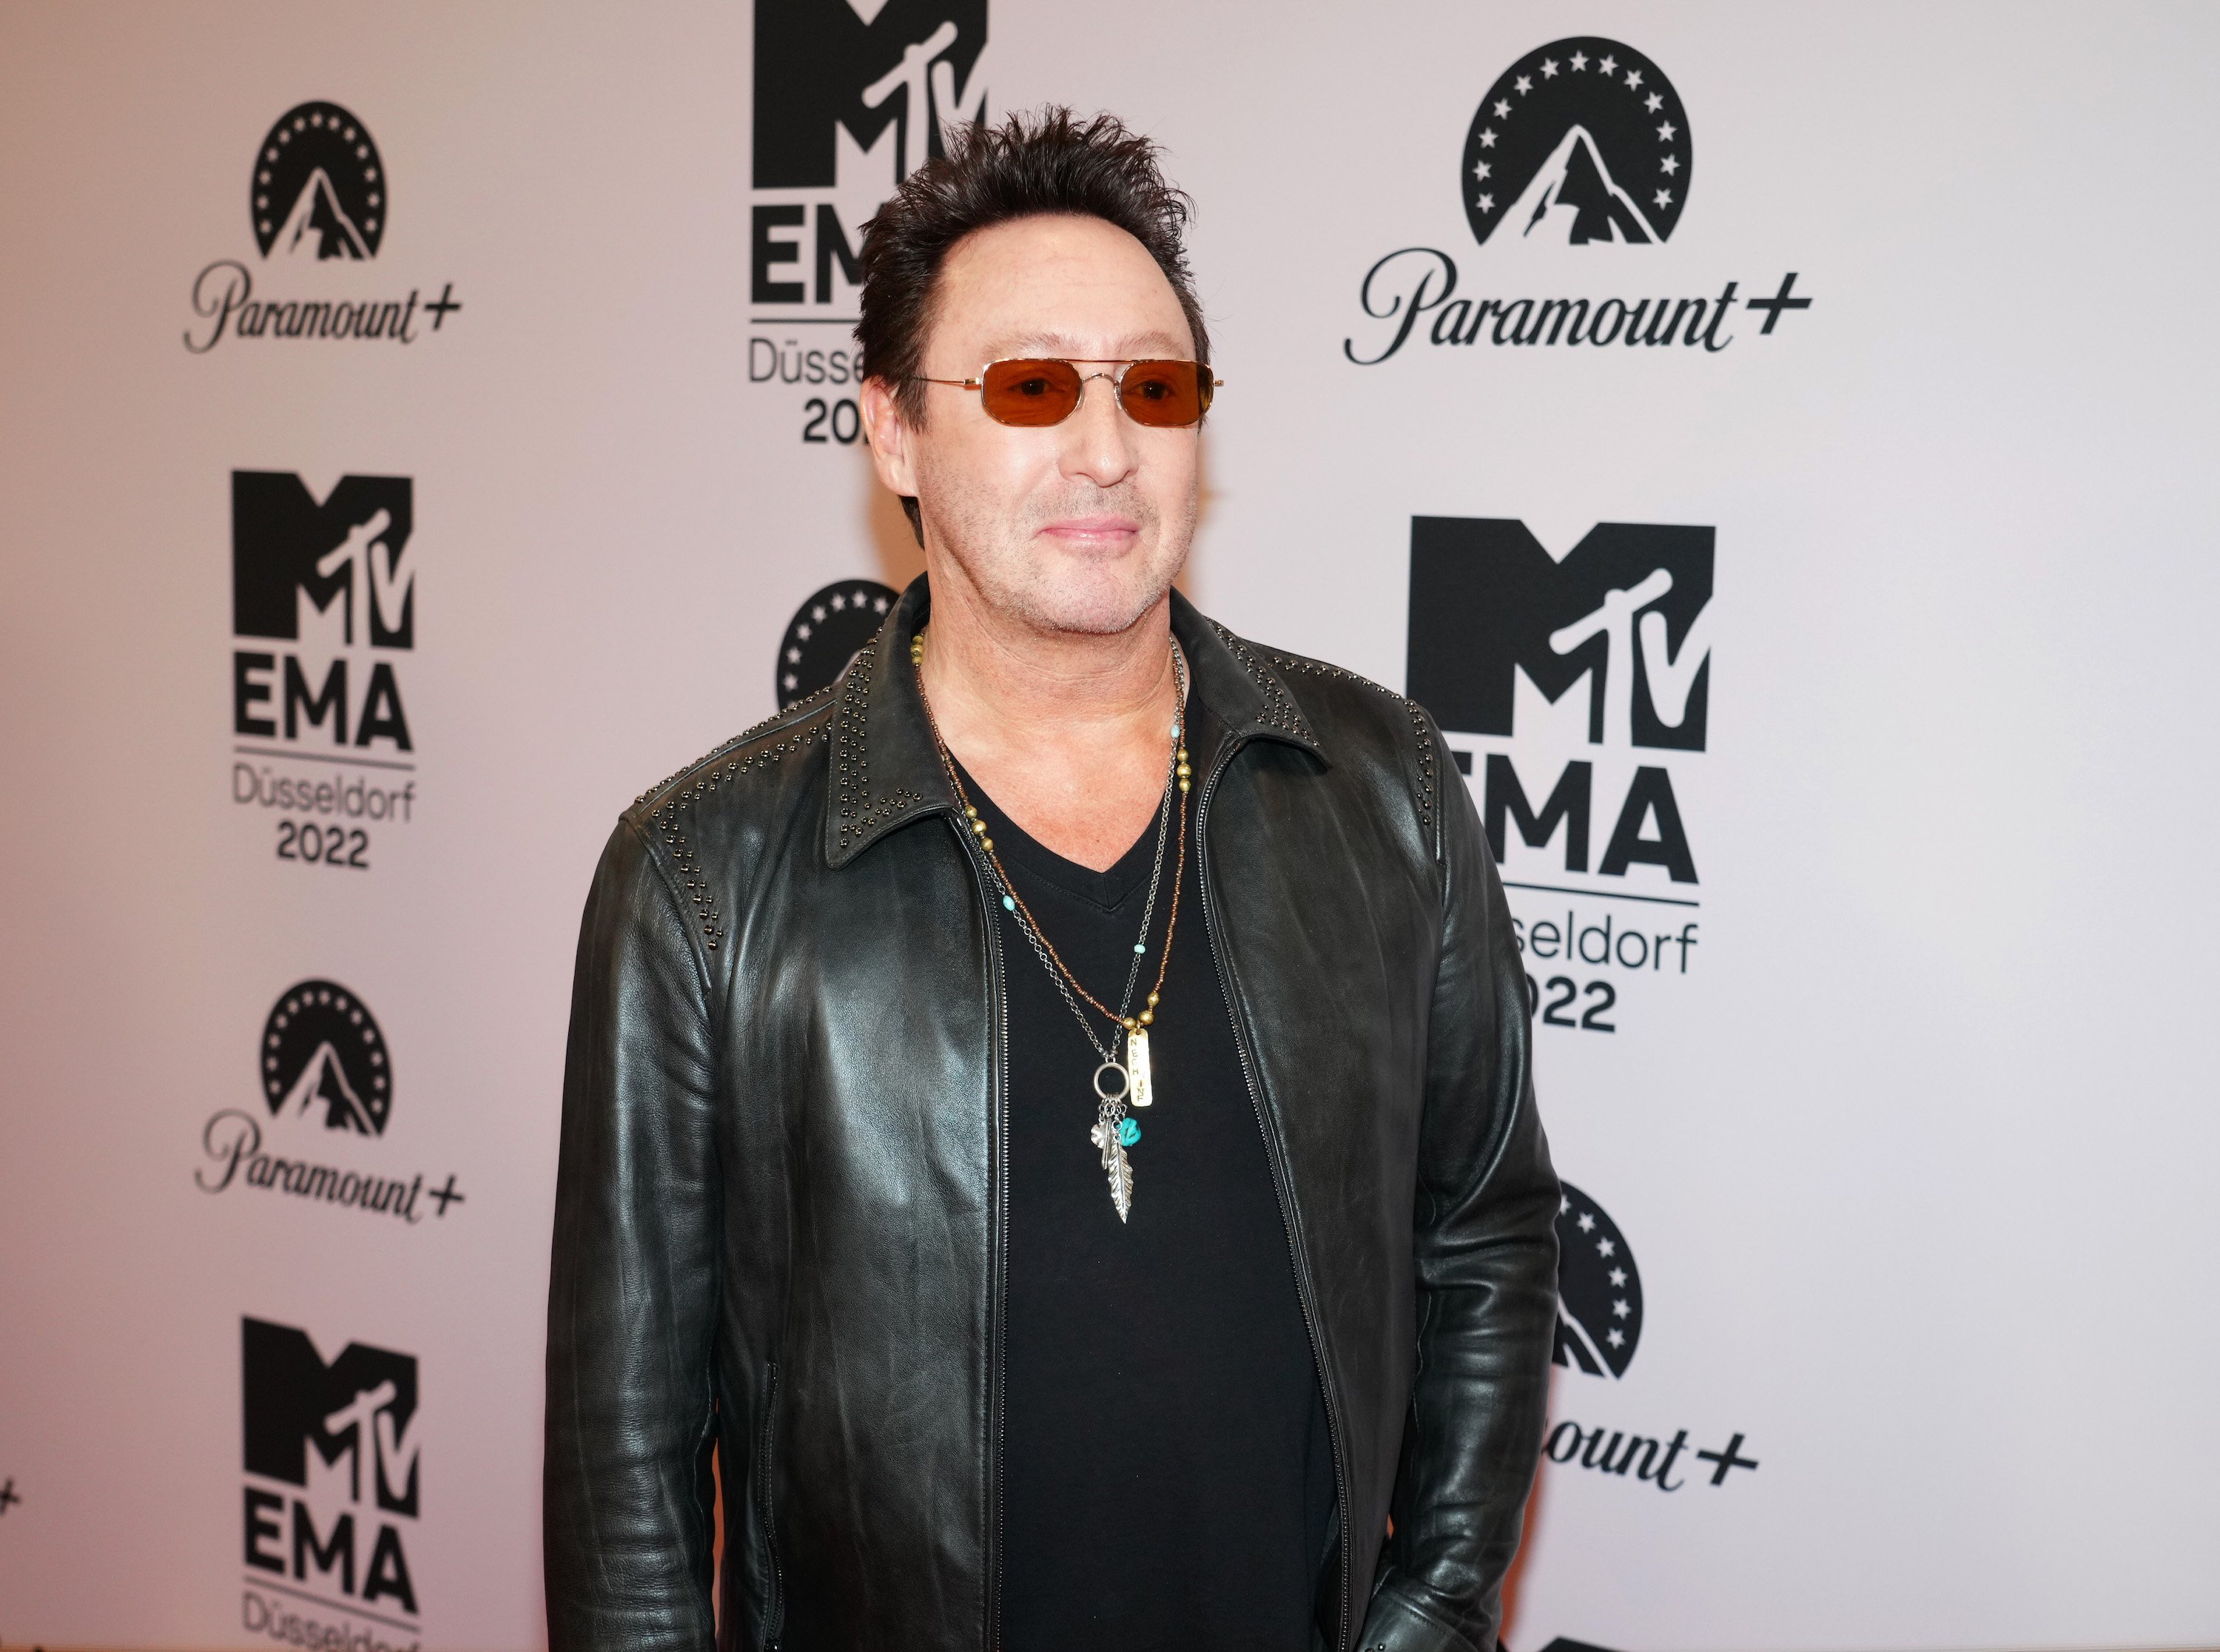 Julian Lennon, son of John Lennon, attends the MTV Europe Music Awards 2022 in Germany